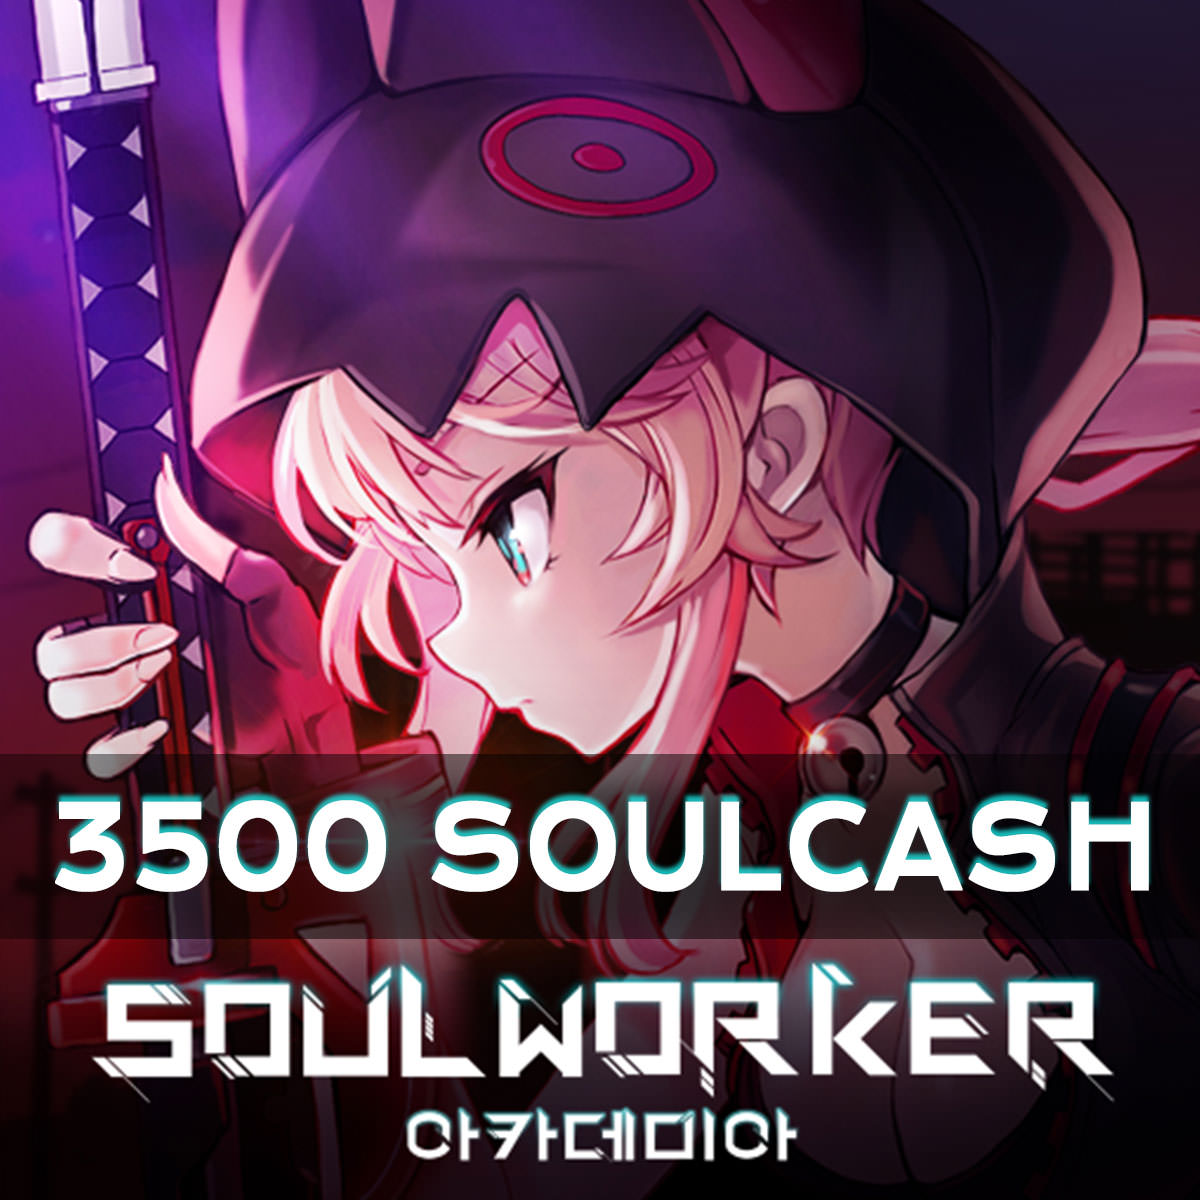 Soulworker 3500 SoulCash